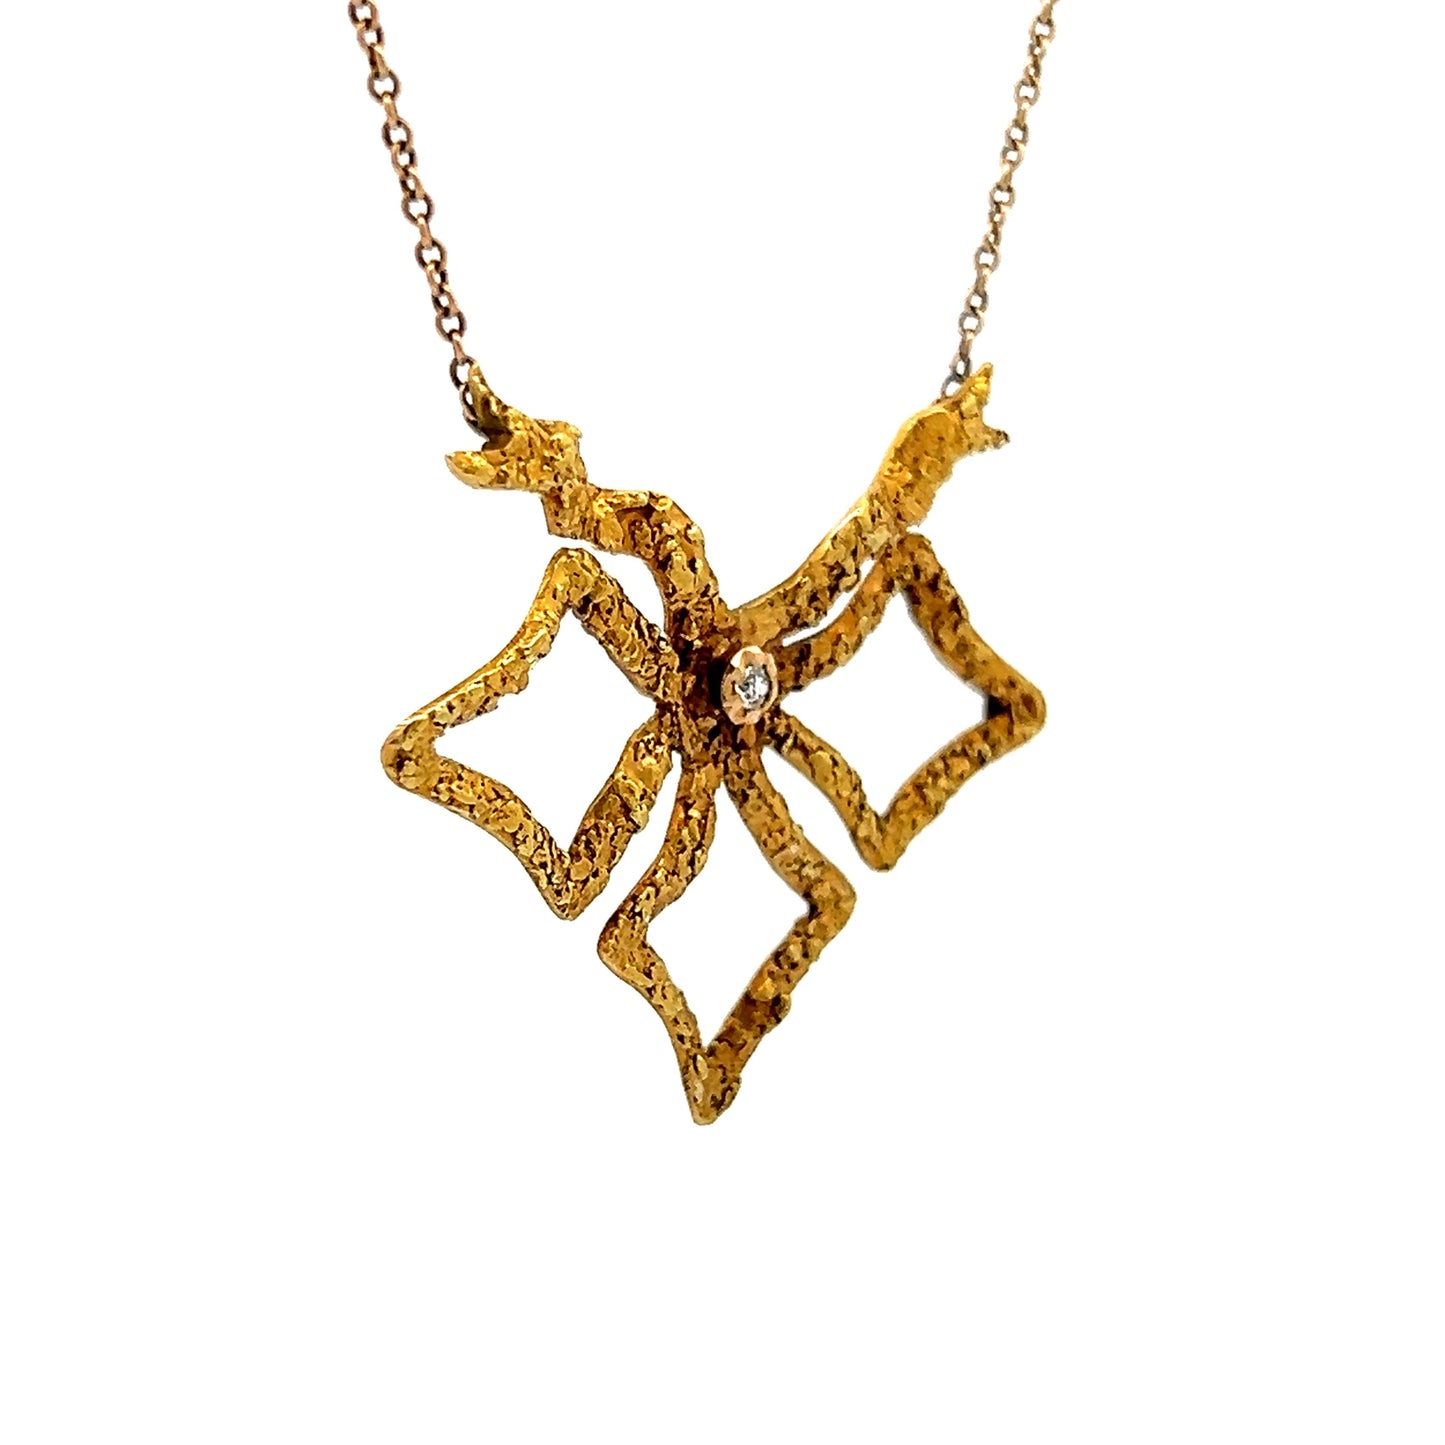 Vintage Art Nouveau Diamond Pendant Necklace in 18k Yellow Gold